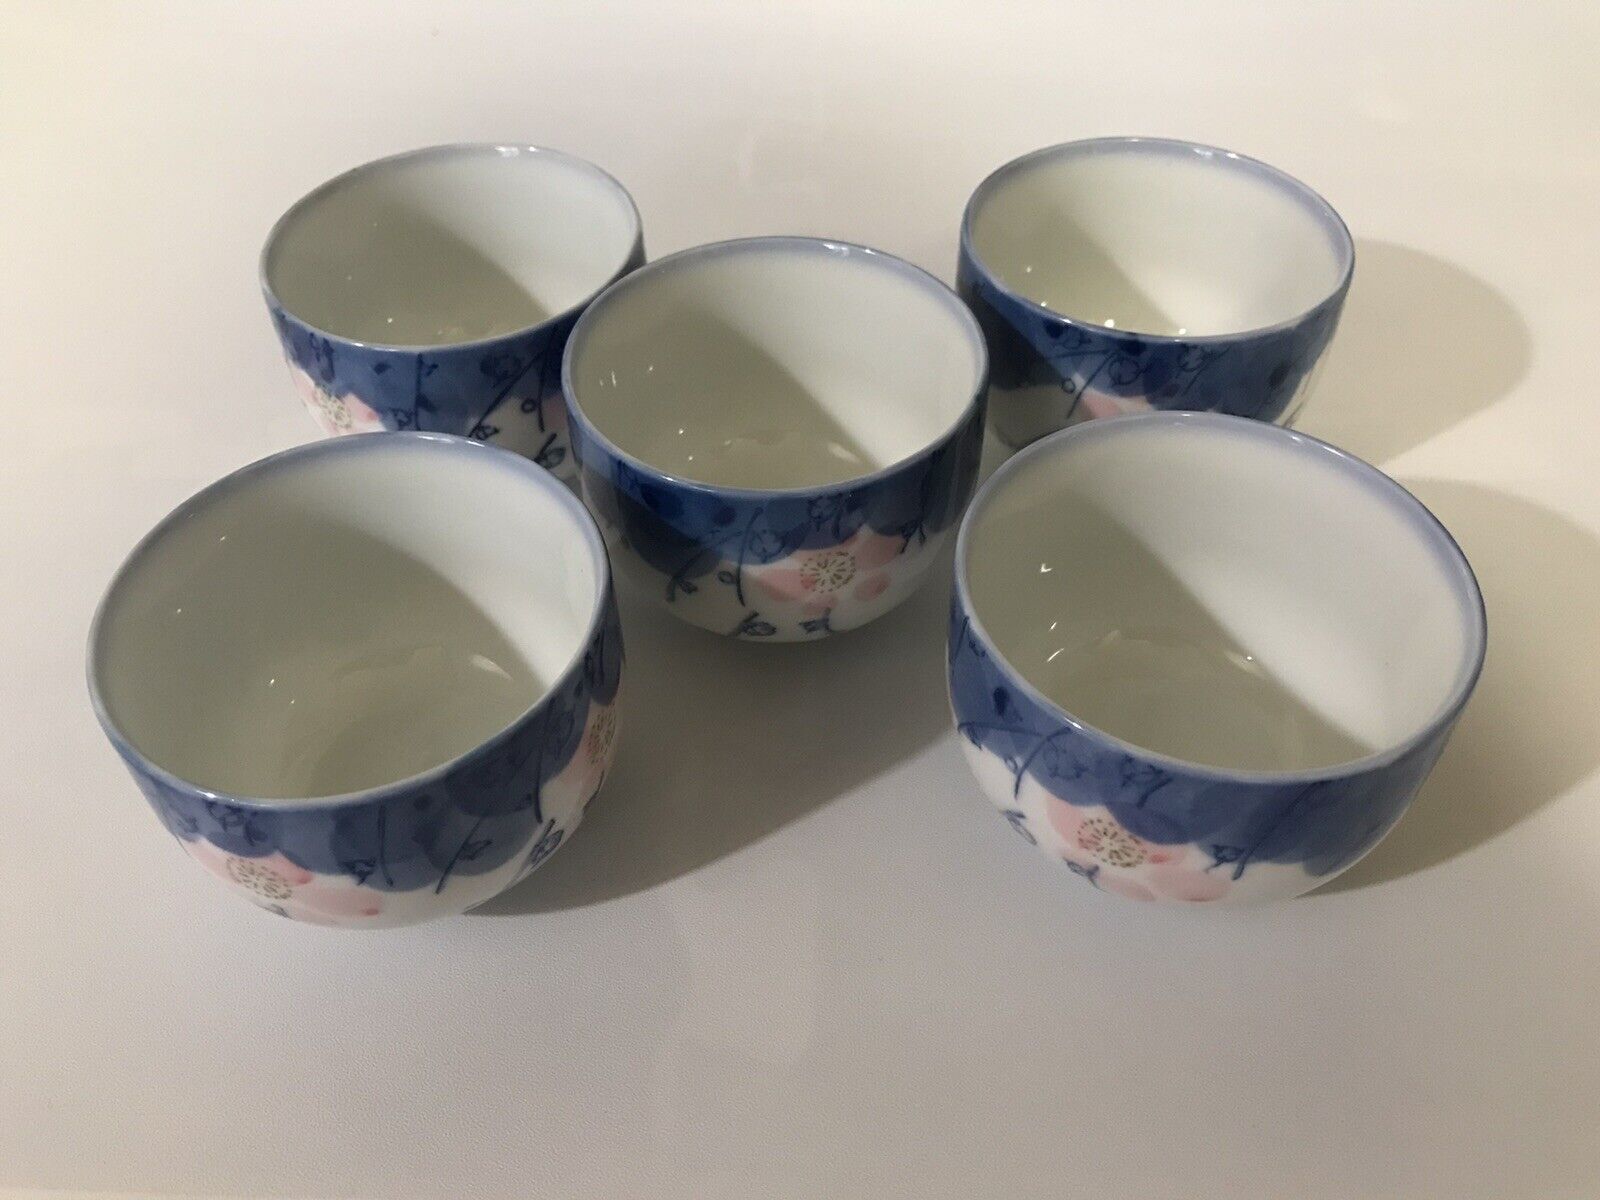 Japanese Arita ware teacups (set of 5) Flower shape